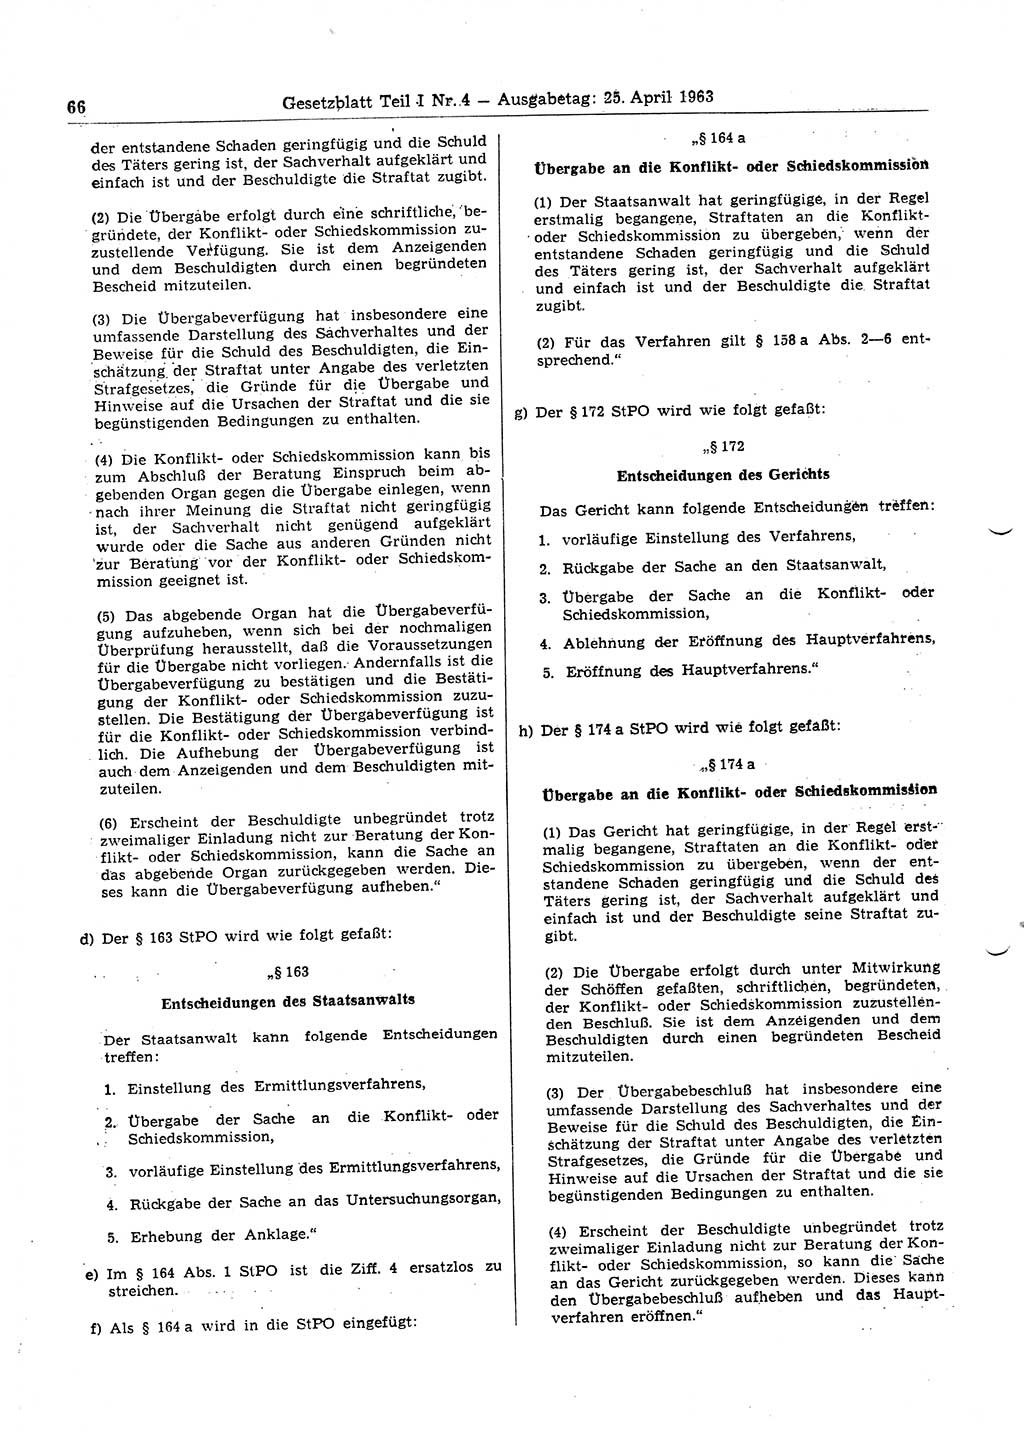 Gesetzblatt (GBl.) der Deutschen Demokratischen Republik (DDR) Teil Ⅰ 1963, Seite 66 (GBl. DDR Ⅰ 1963, S. 66)